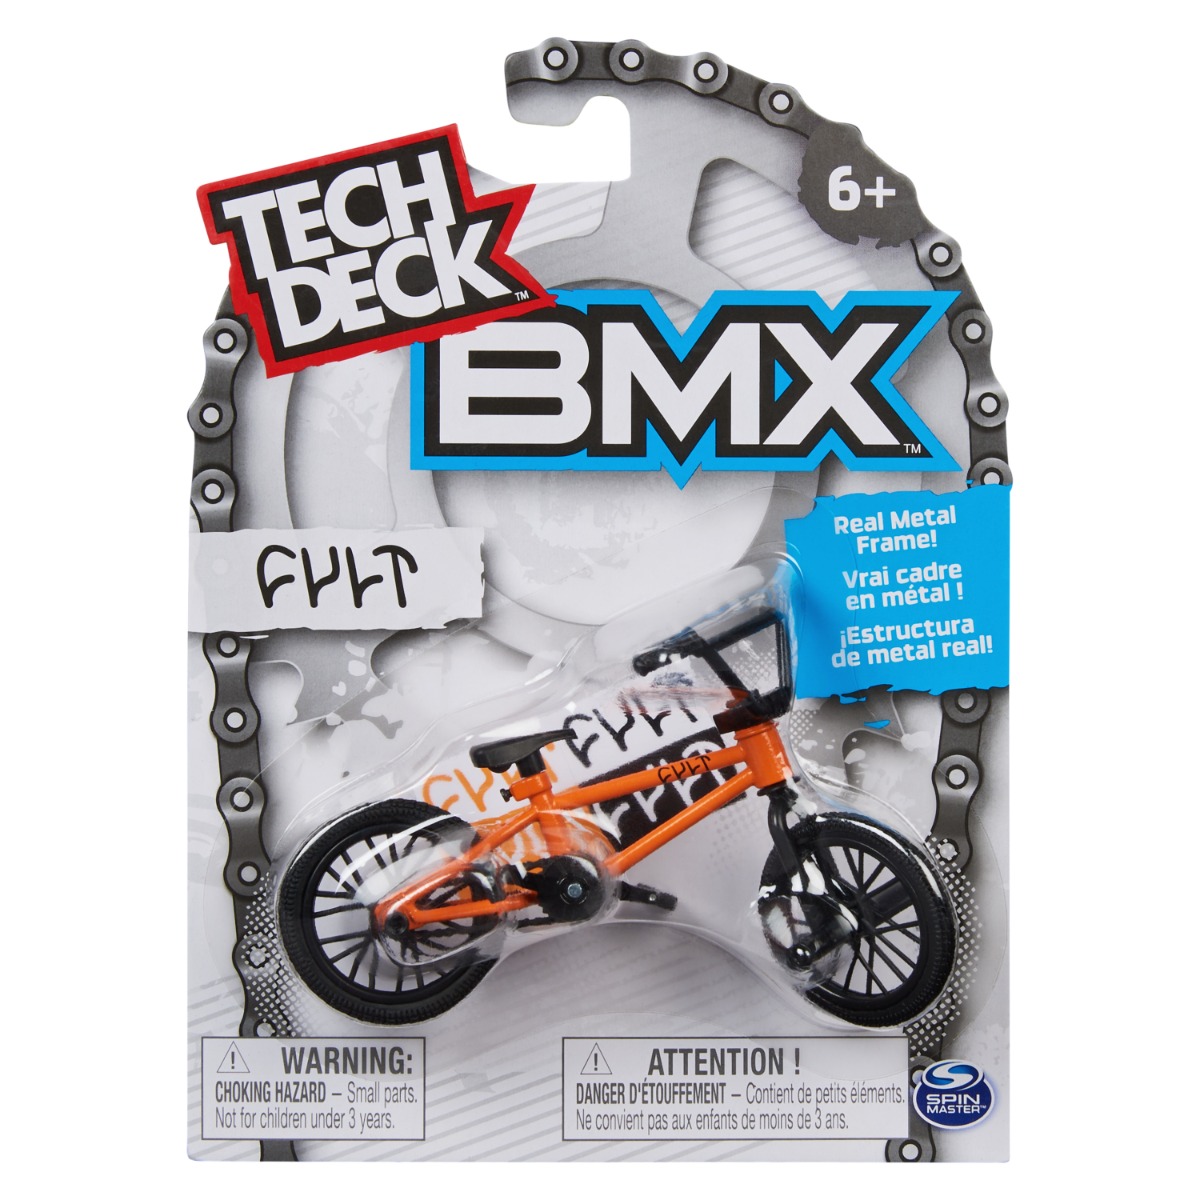 Mini BMX bike, Tech Deck, Cult, 20140828 20140828 imagine 2022